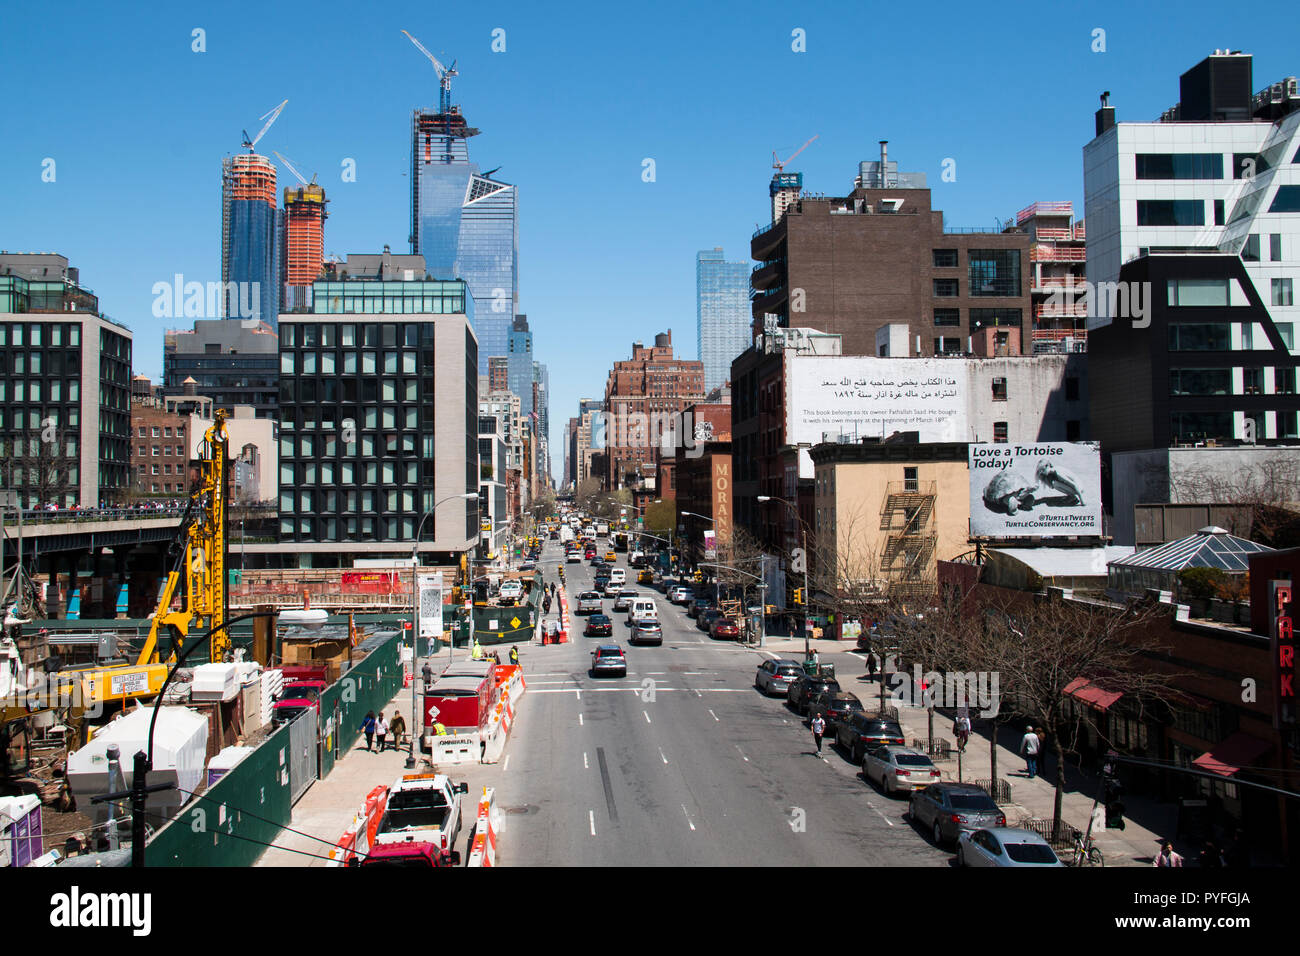 La città di NEW YORK, Stati Uniti d'America - Aprile 2018: Street view nel centro cittadino di Manhattan nel centro della città di New York, Stati Uniti d'America Foto Stock